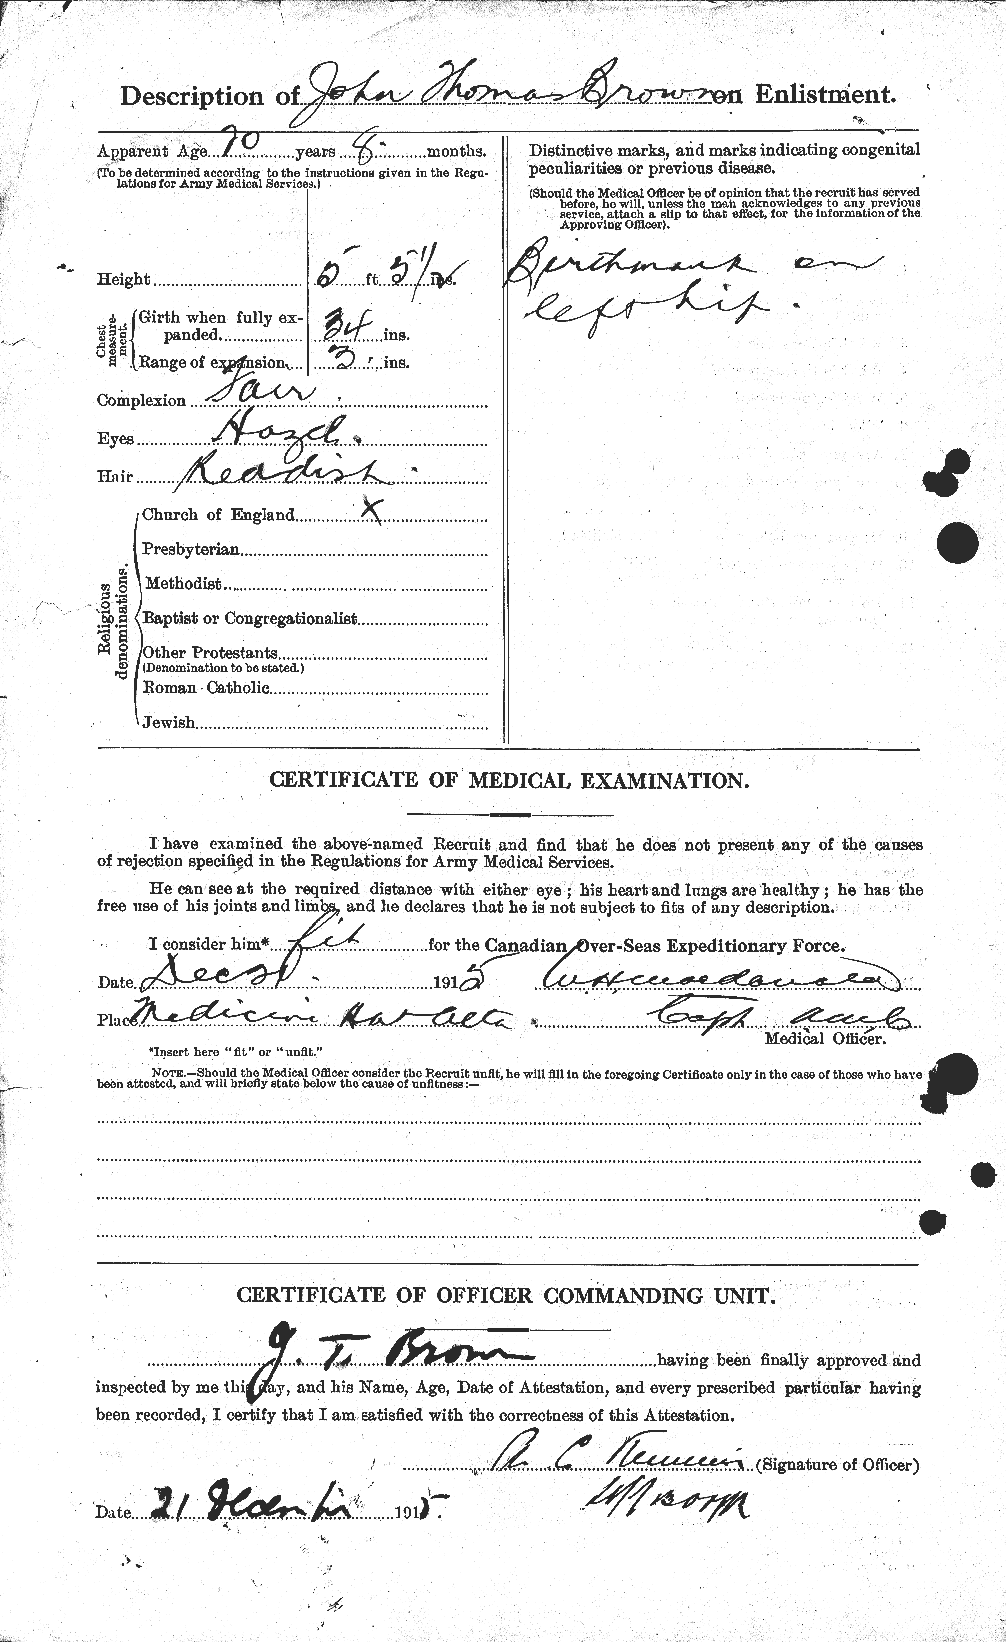 Dossiers du Personnel de la Première Guerre mondiale - CEC 265891b